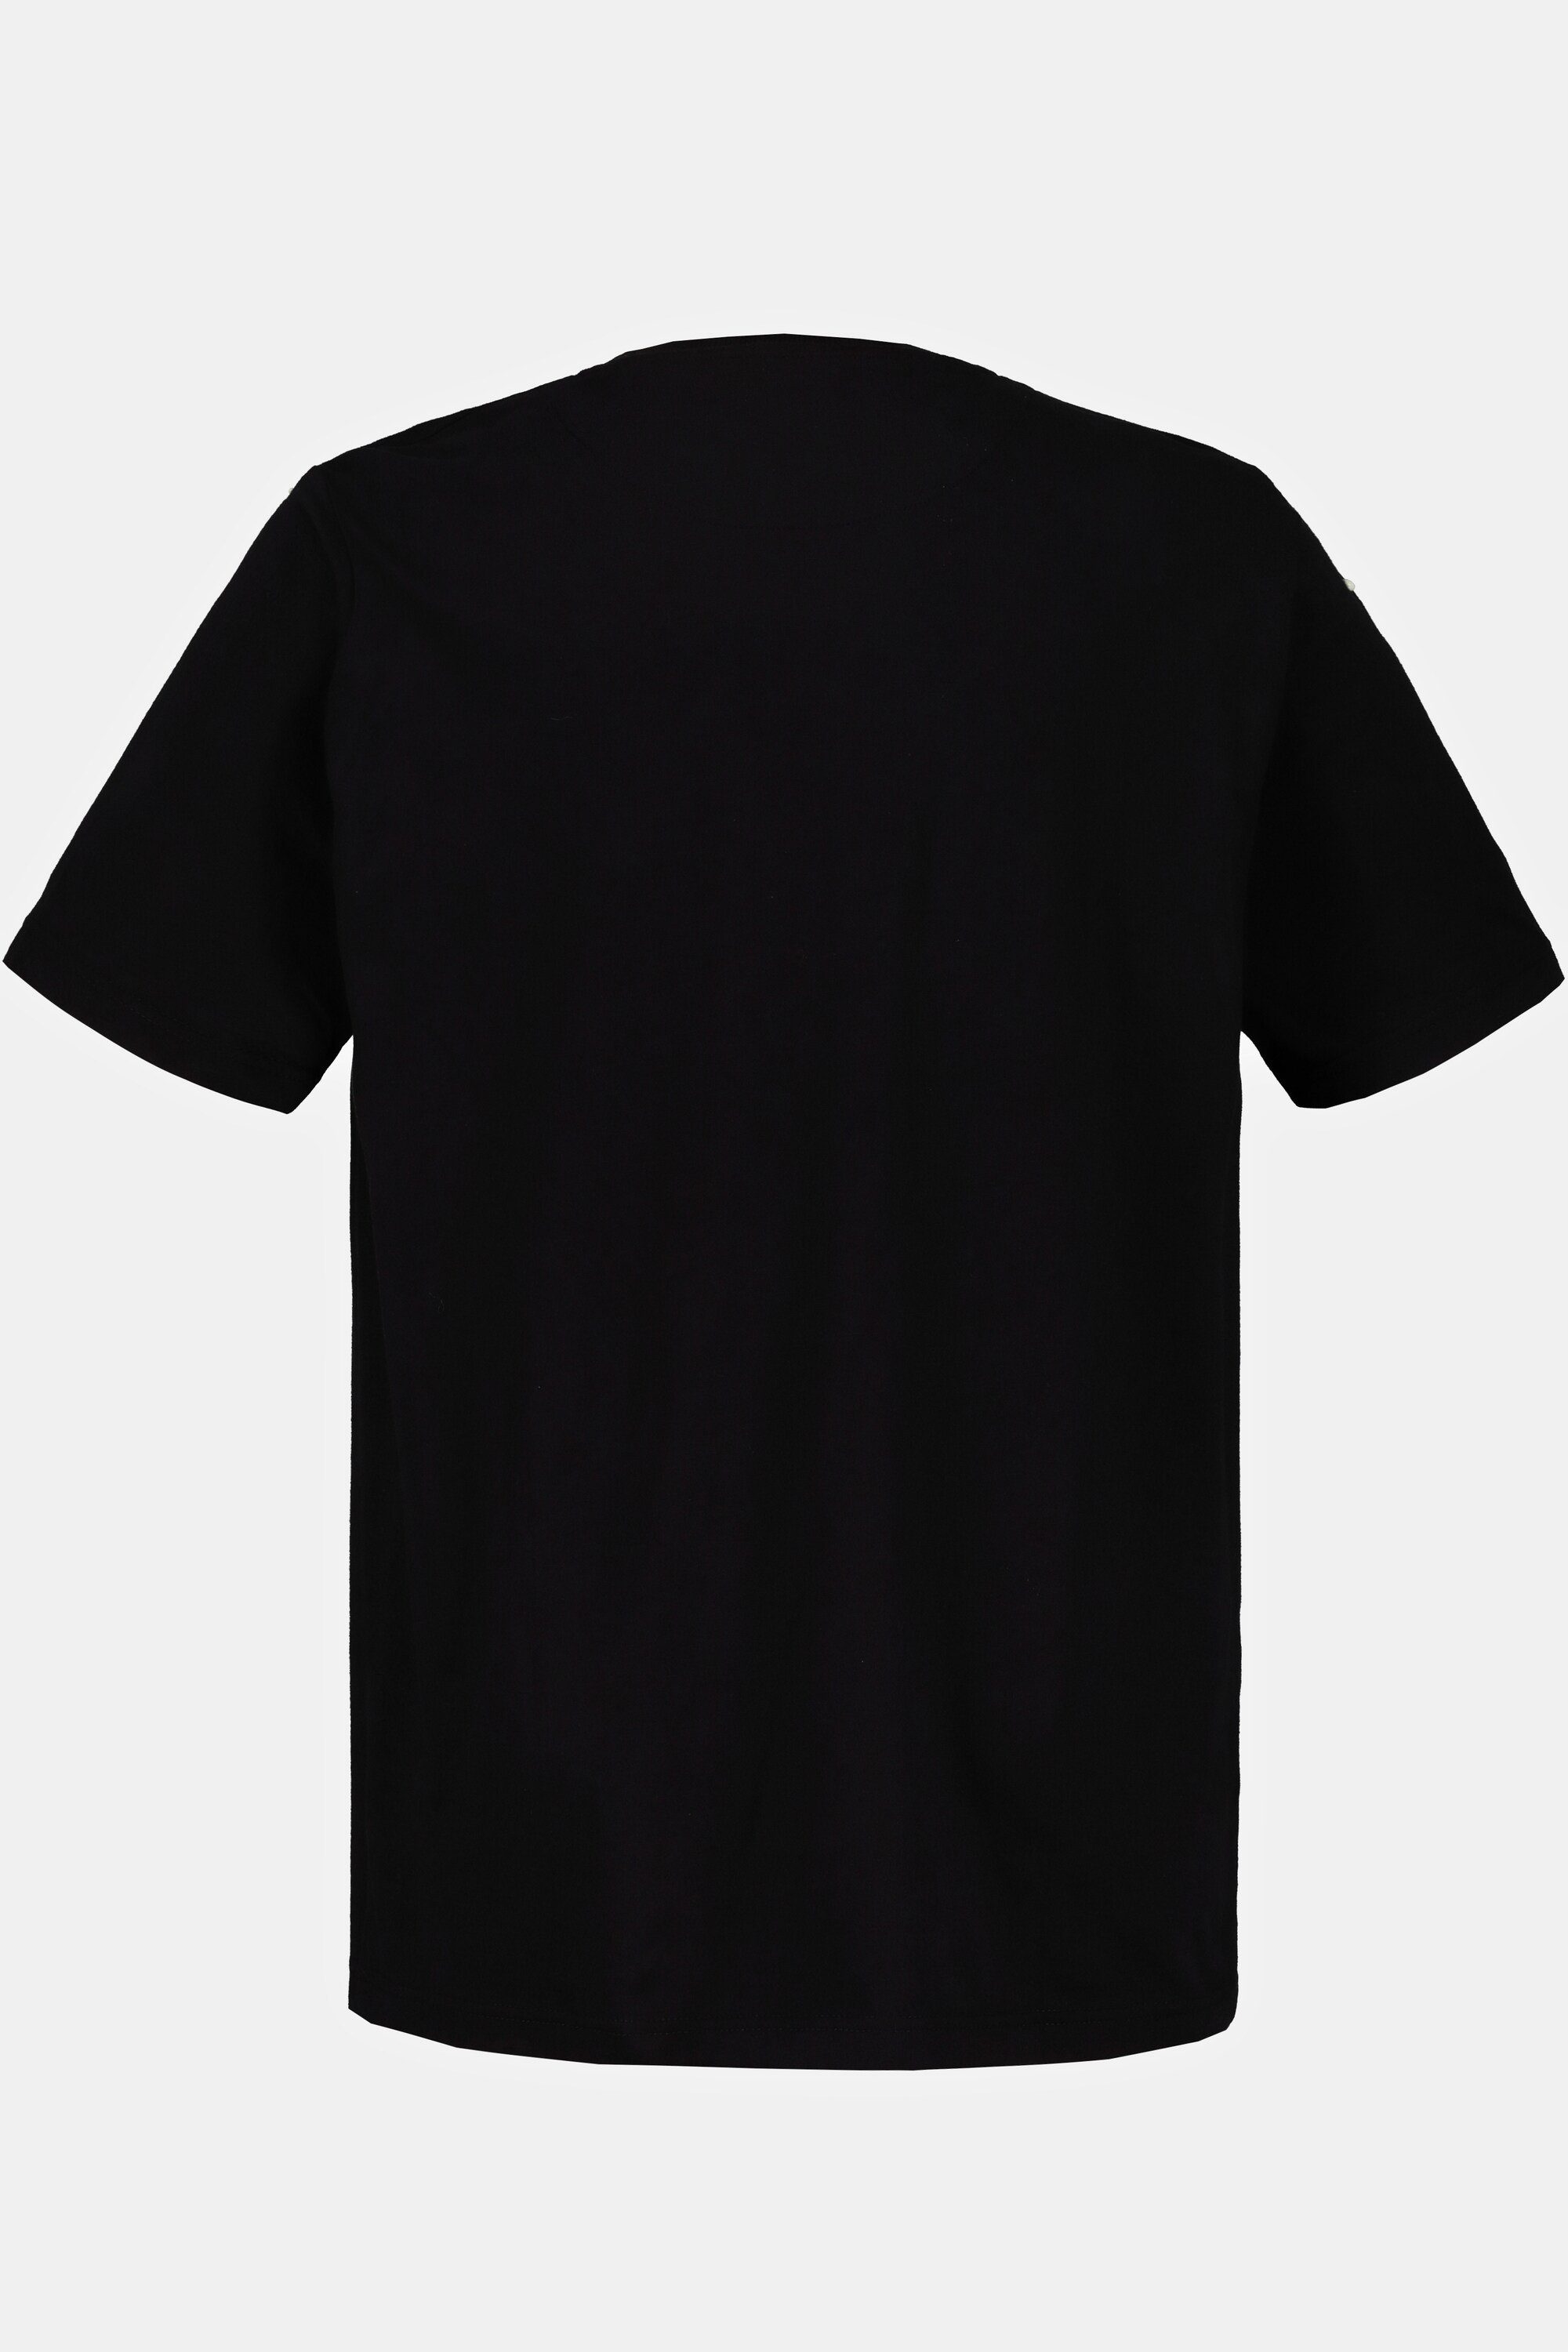 T-Shirt Bandshirt Halbarm JP1880 KISS T-Shirt